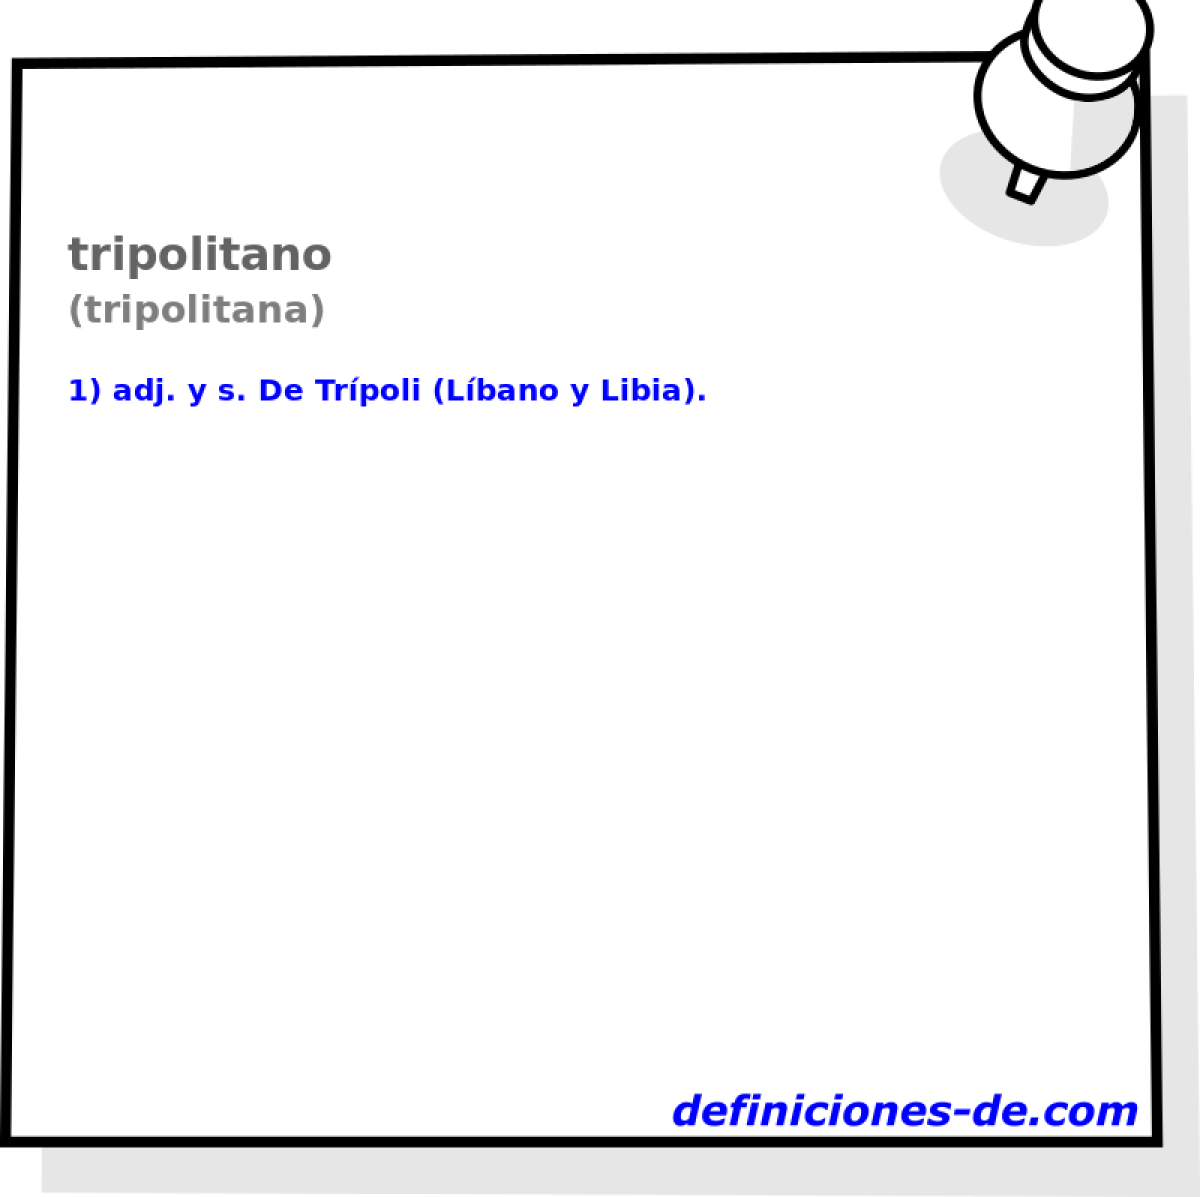 tripolitano (tripolitana)